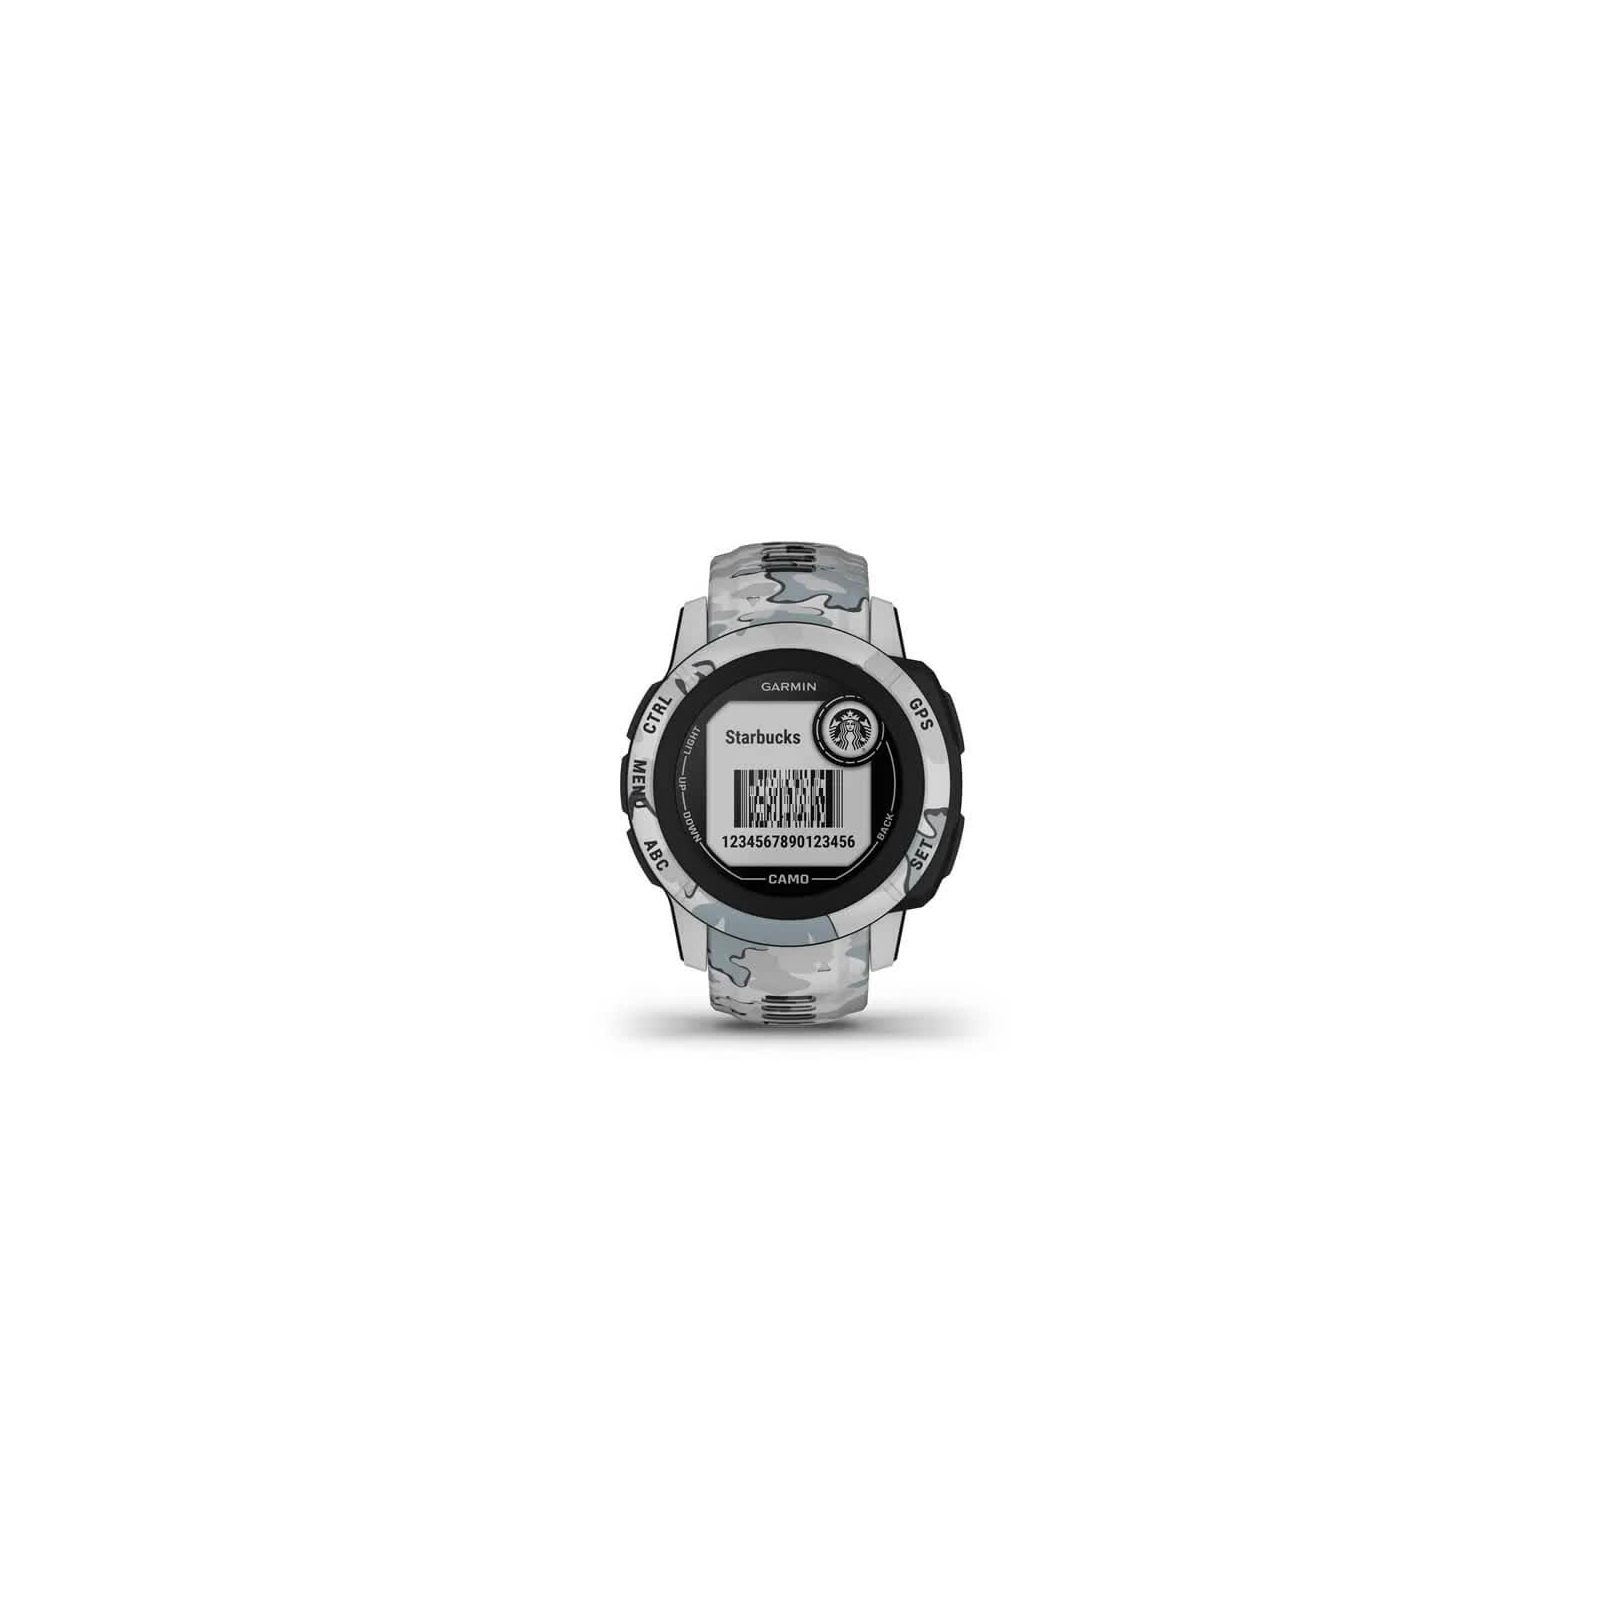 Смарт-часы Garmin Instinct 2S, Camo Edition, Mist Camo, GPS (010-02563-03) изображение 4